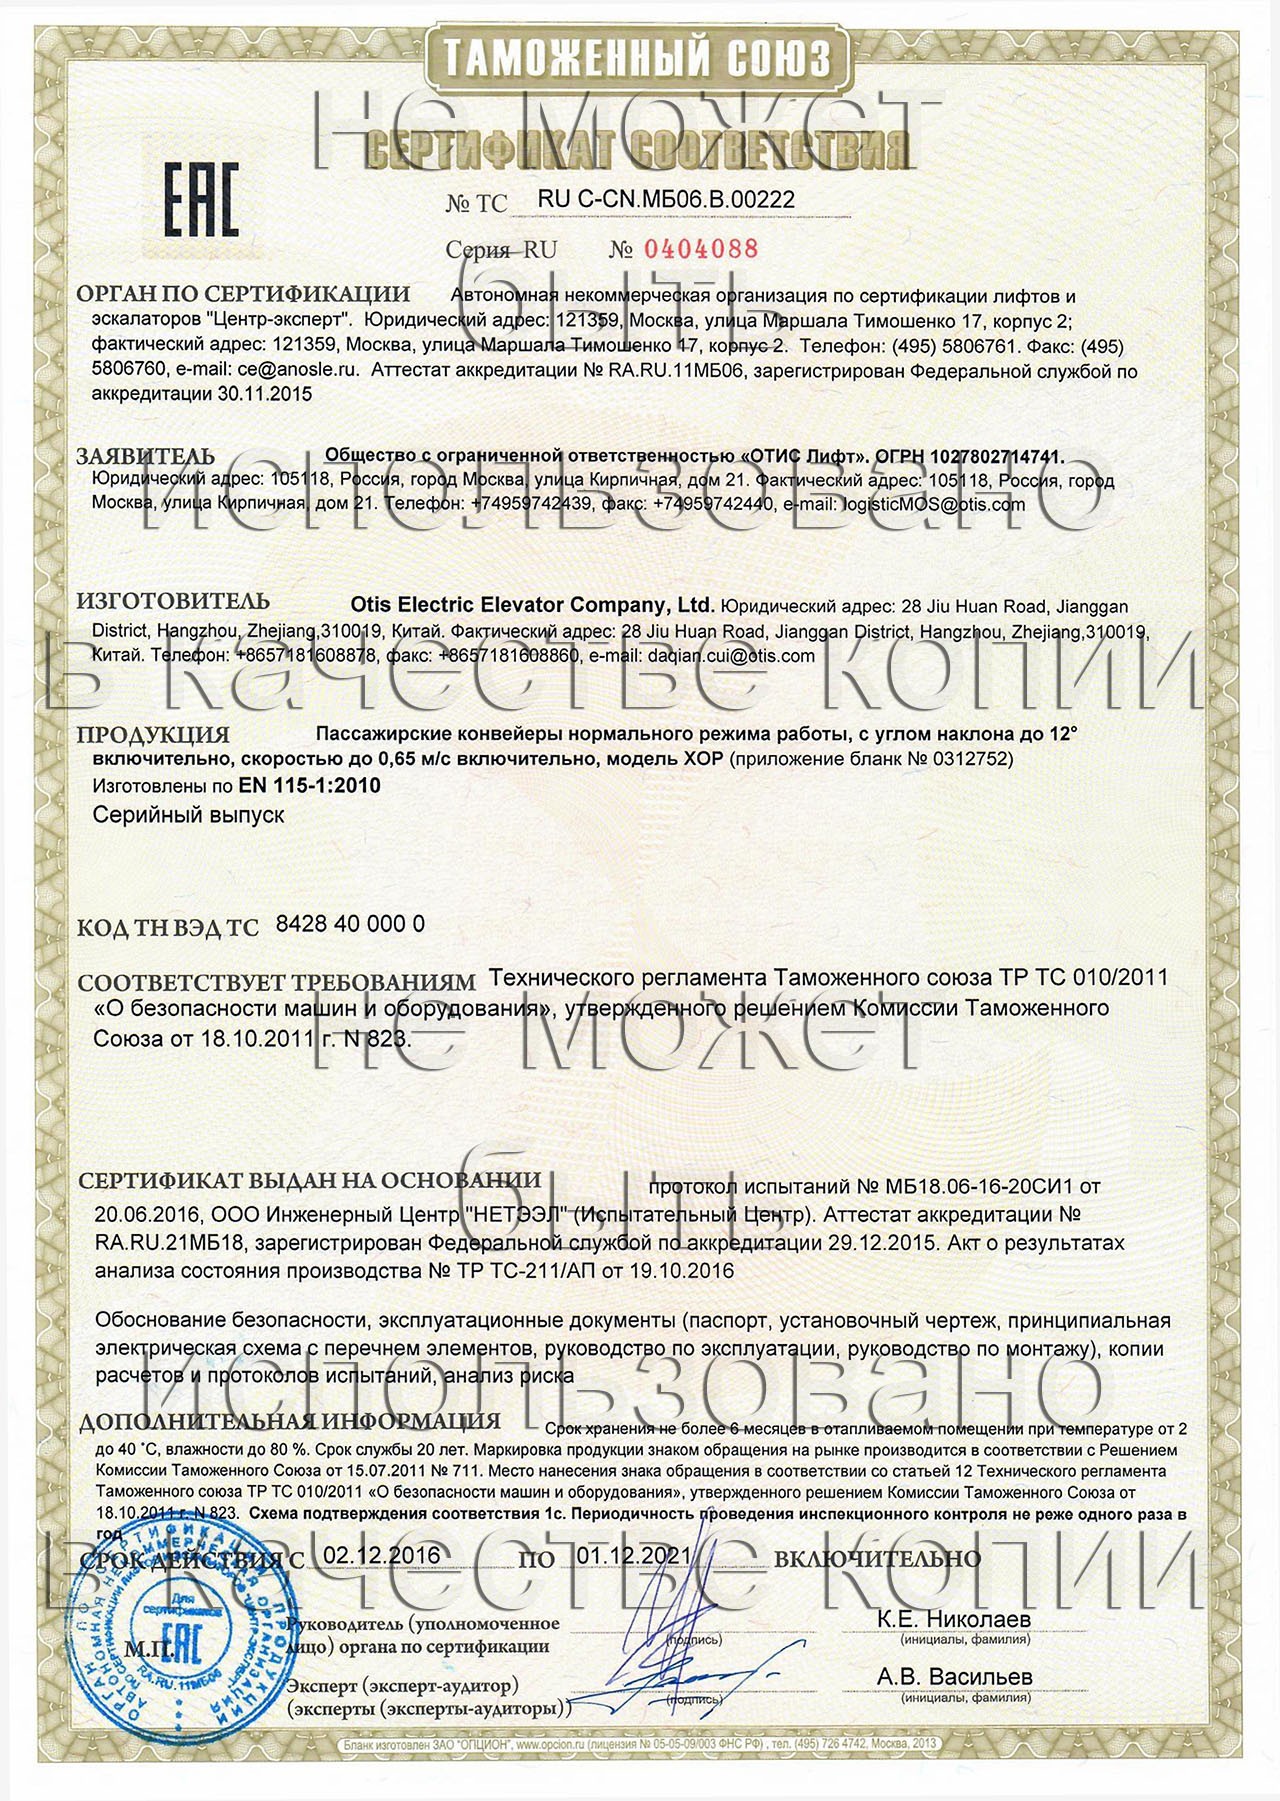 сертификат ТС RU С-CN.МБ06.В.00222 на пассажирские конвейеры